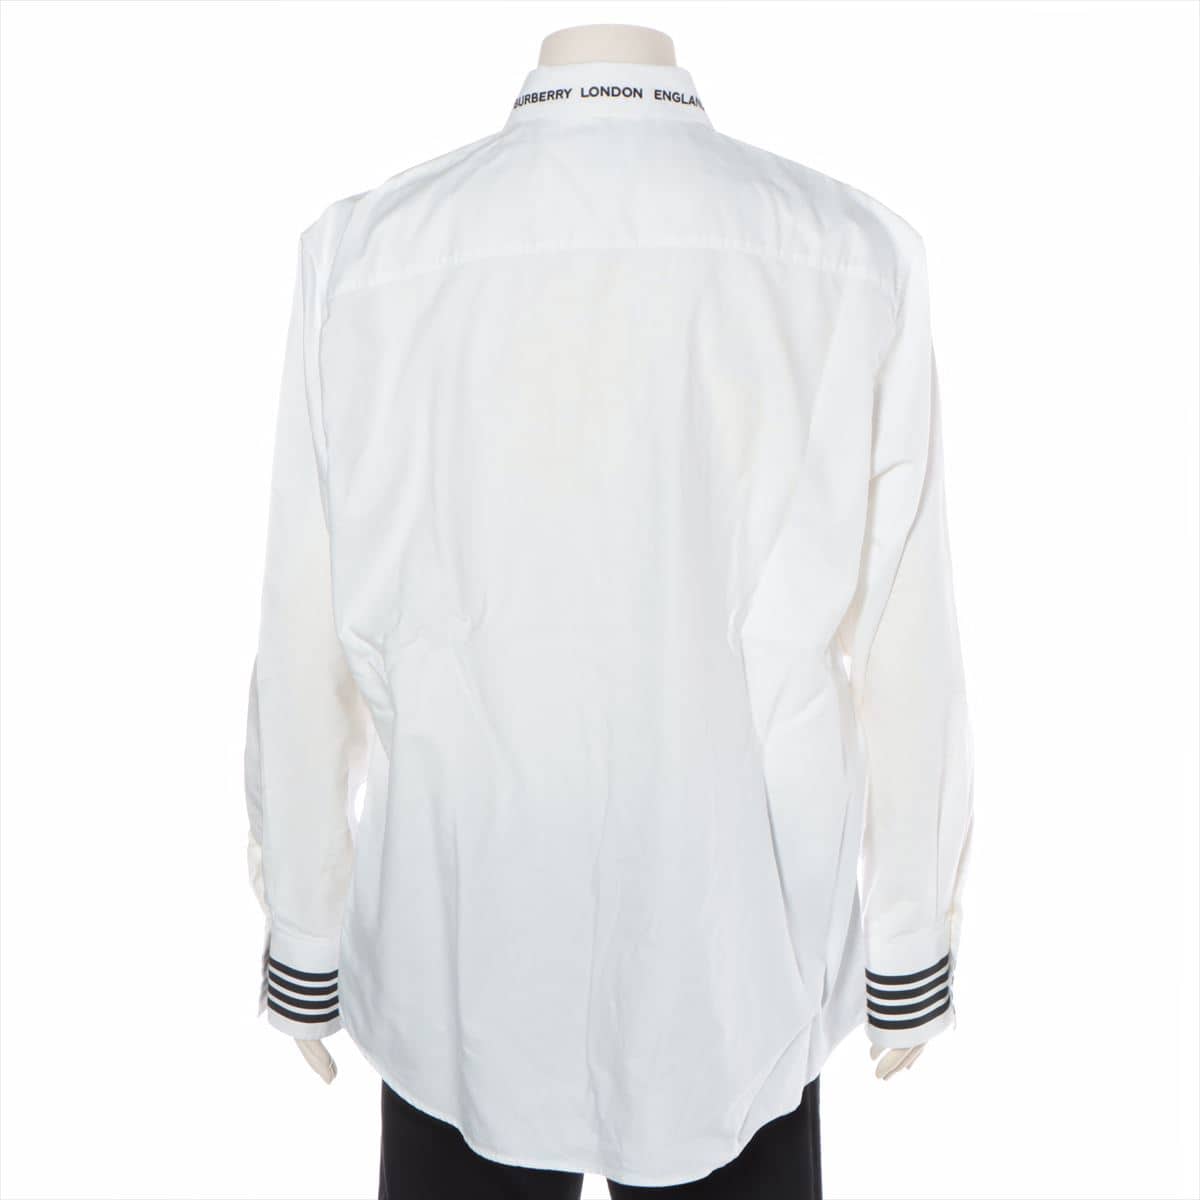 Burberry Cotton Shirt XXL Men's White